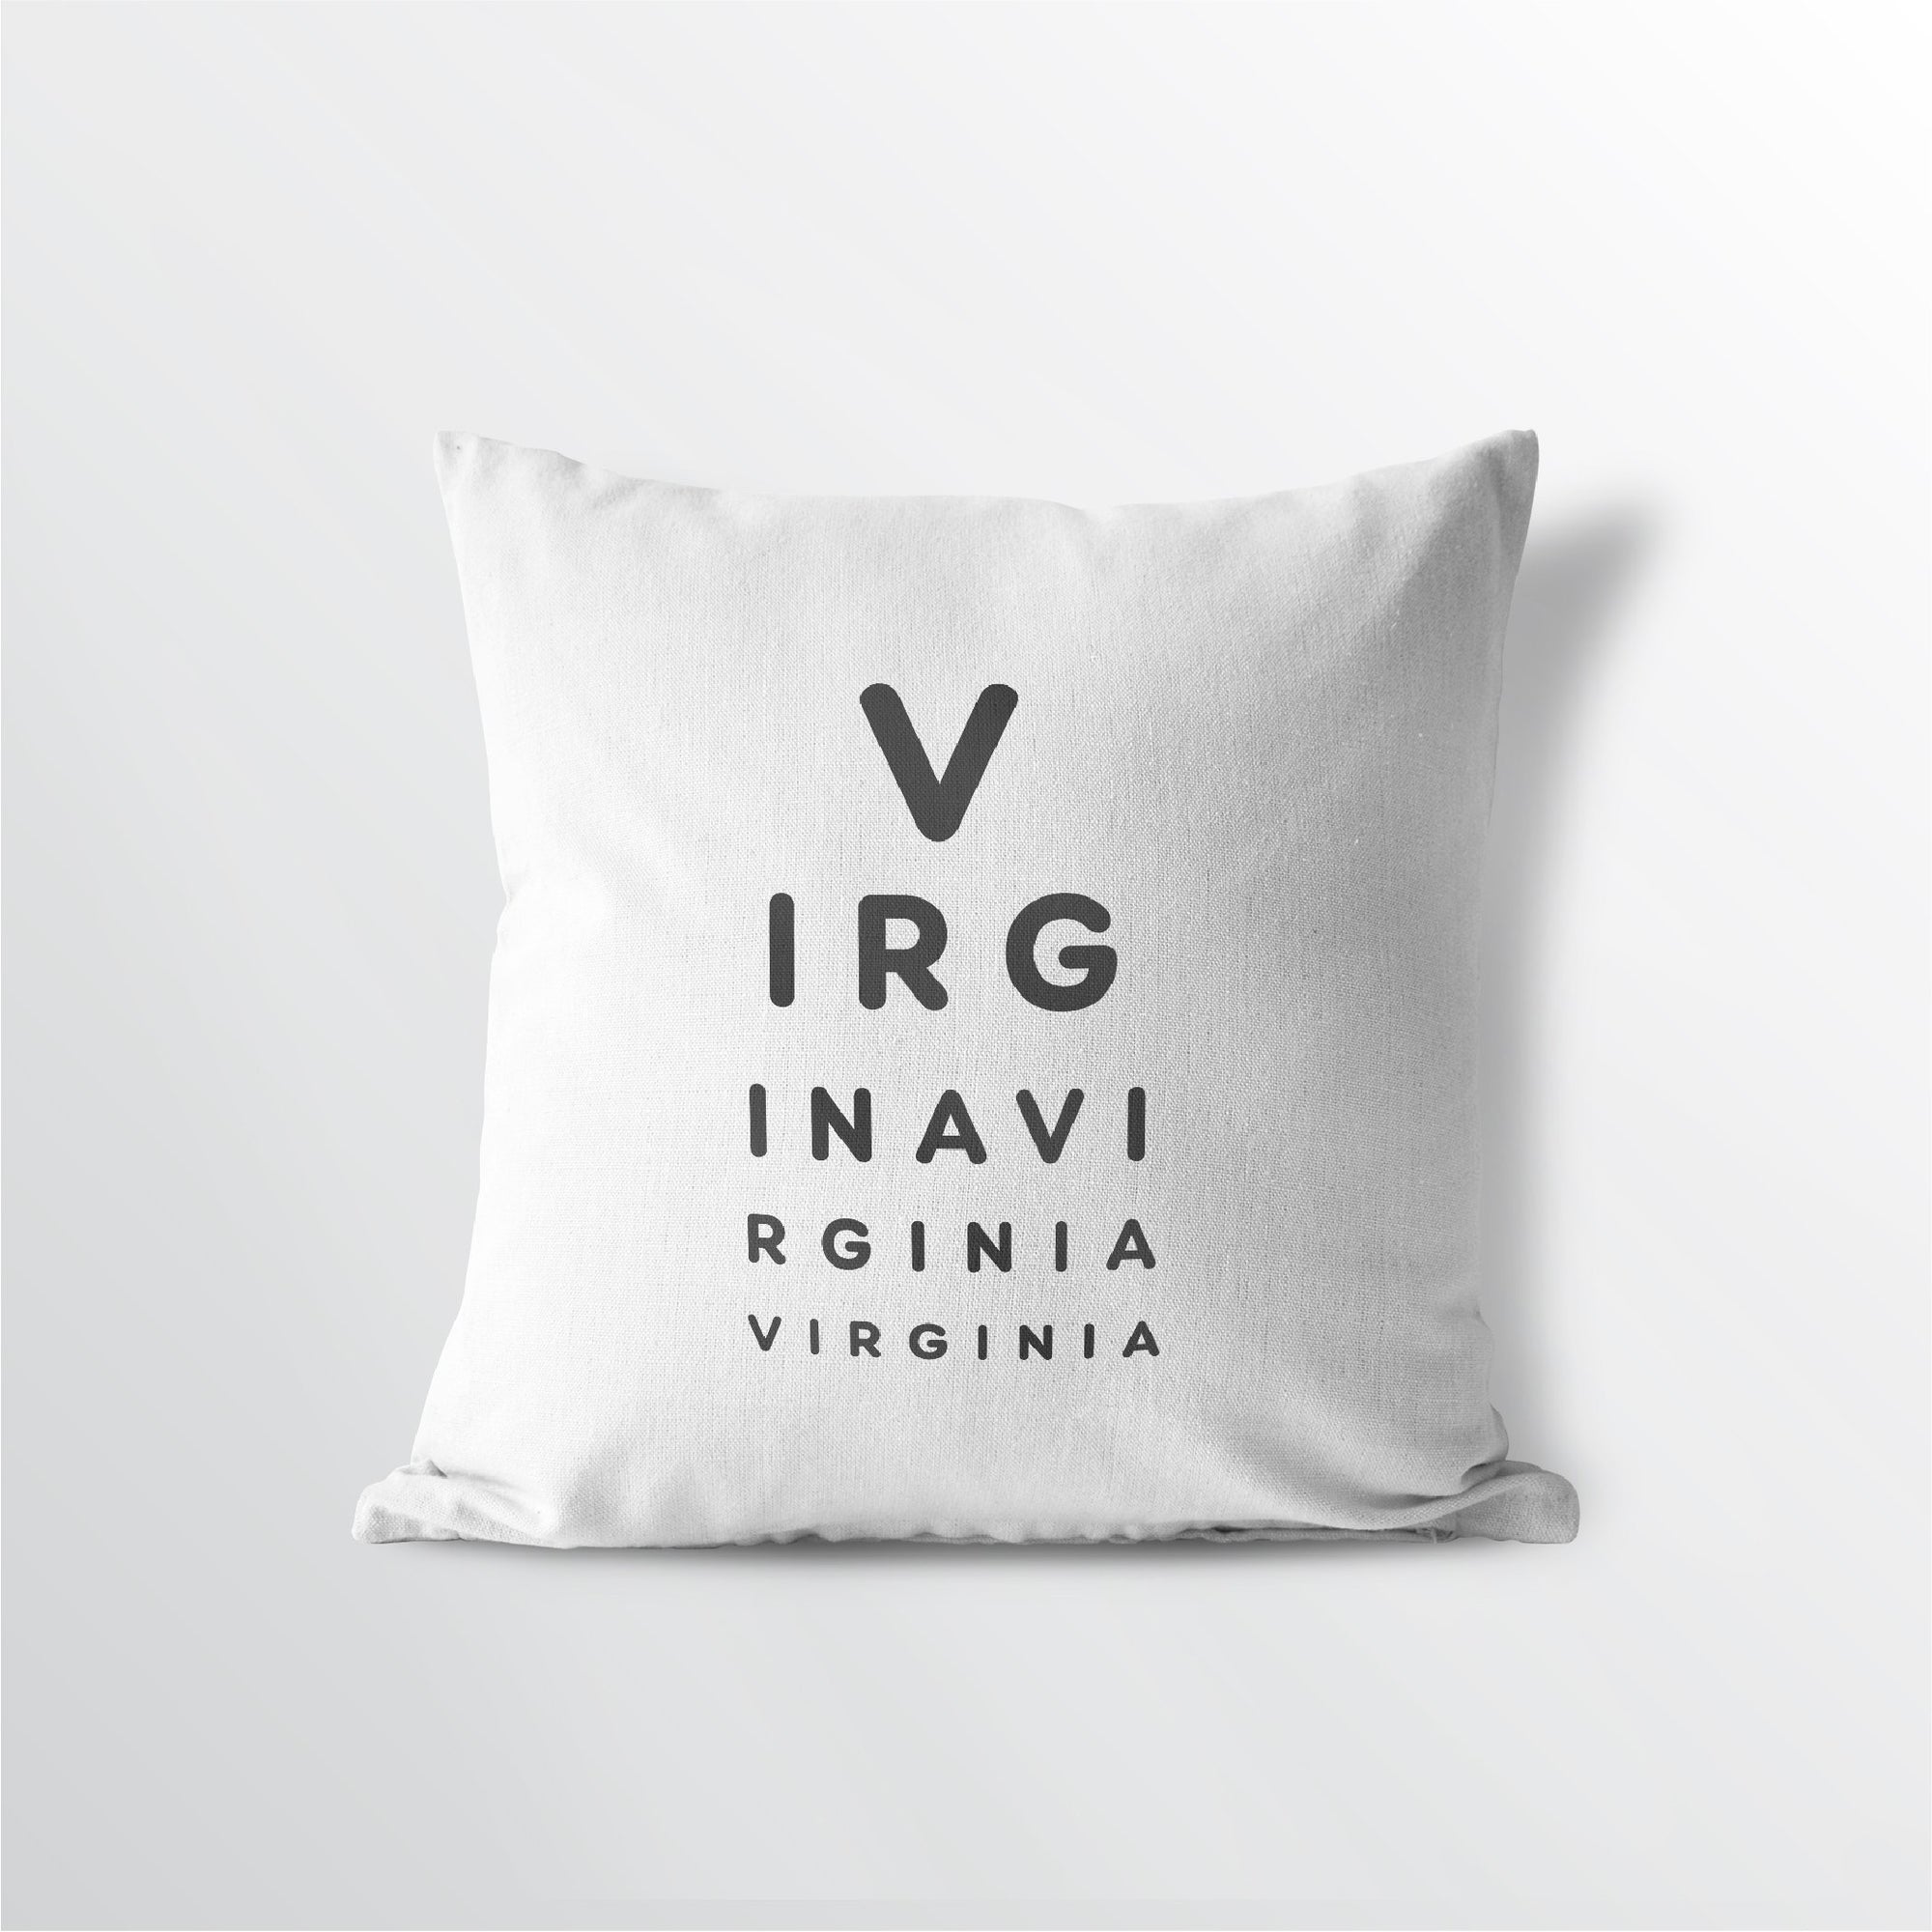 Virginia "Eye Exam" Throw Pillow